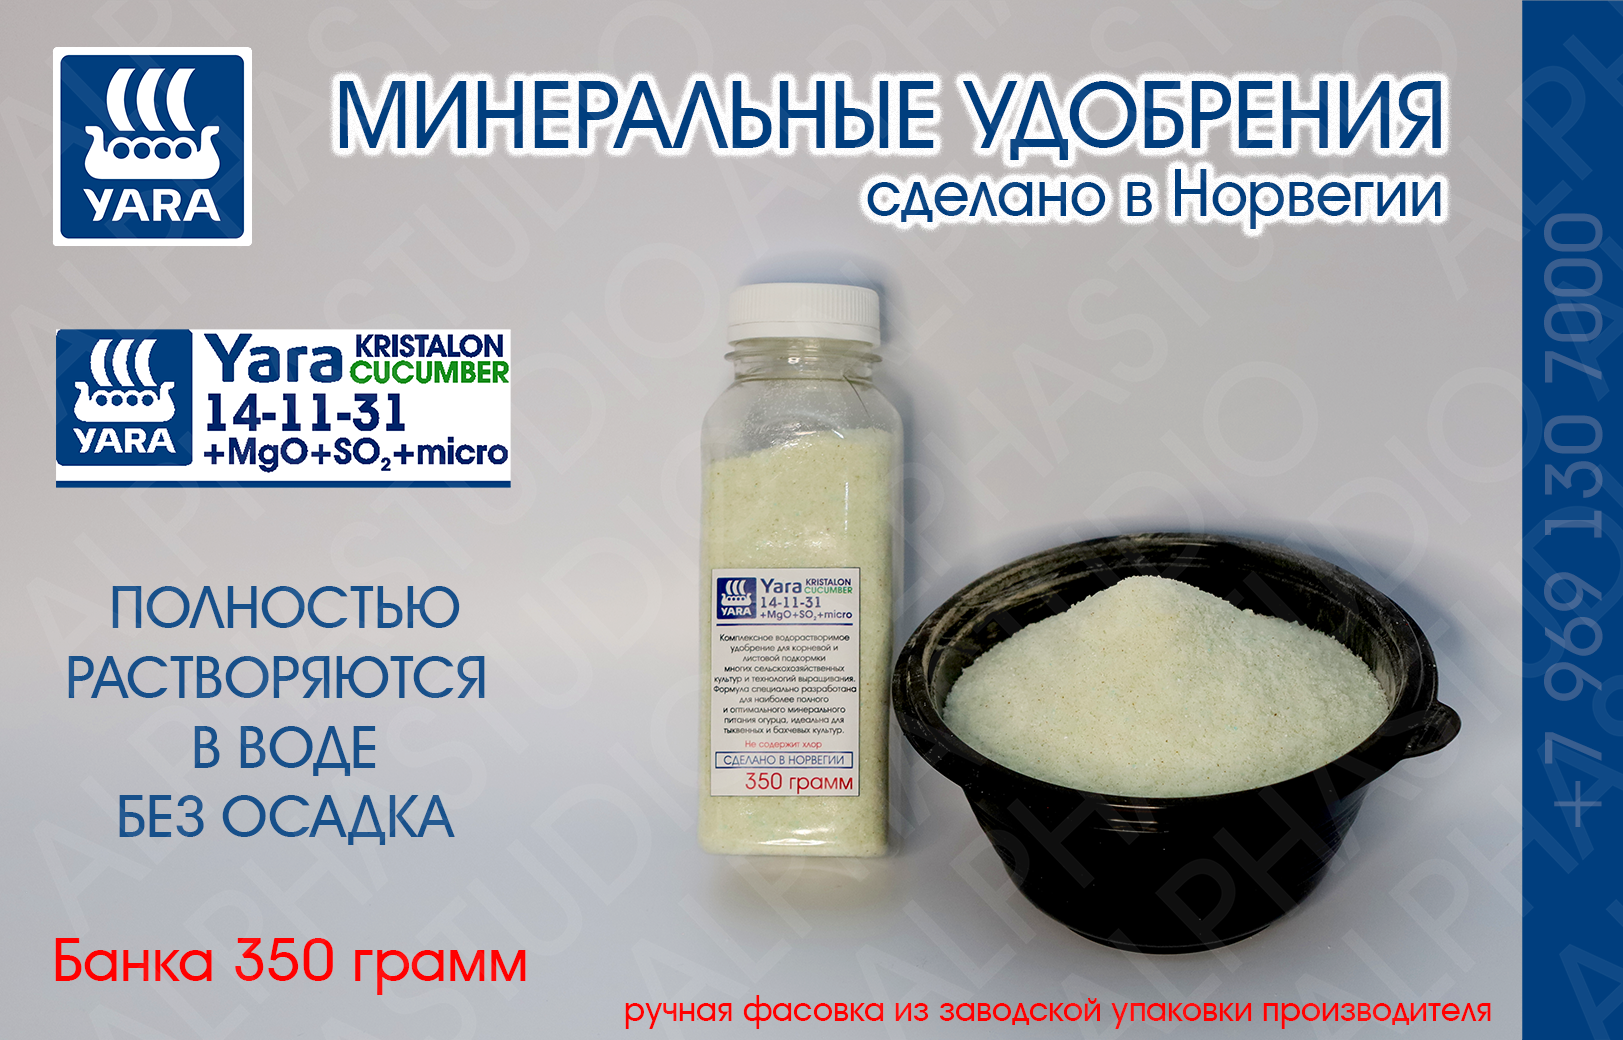 Минеральное удобрение YARA Kristalon Cucumber 14-11-31+3Mg+SO2+micro. Банка 350 грамм